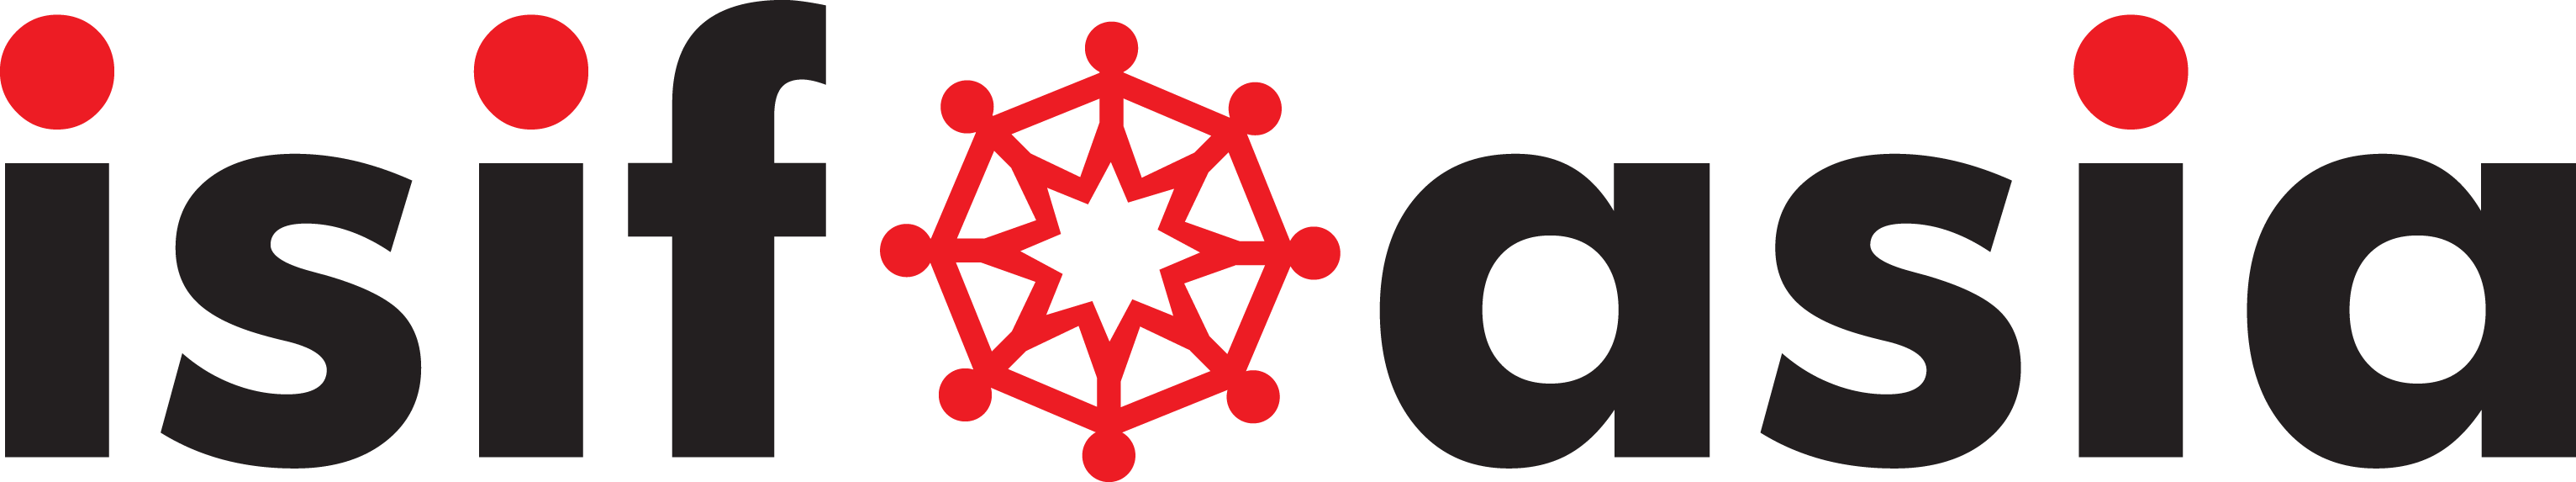 isif logo